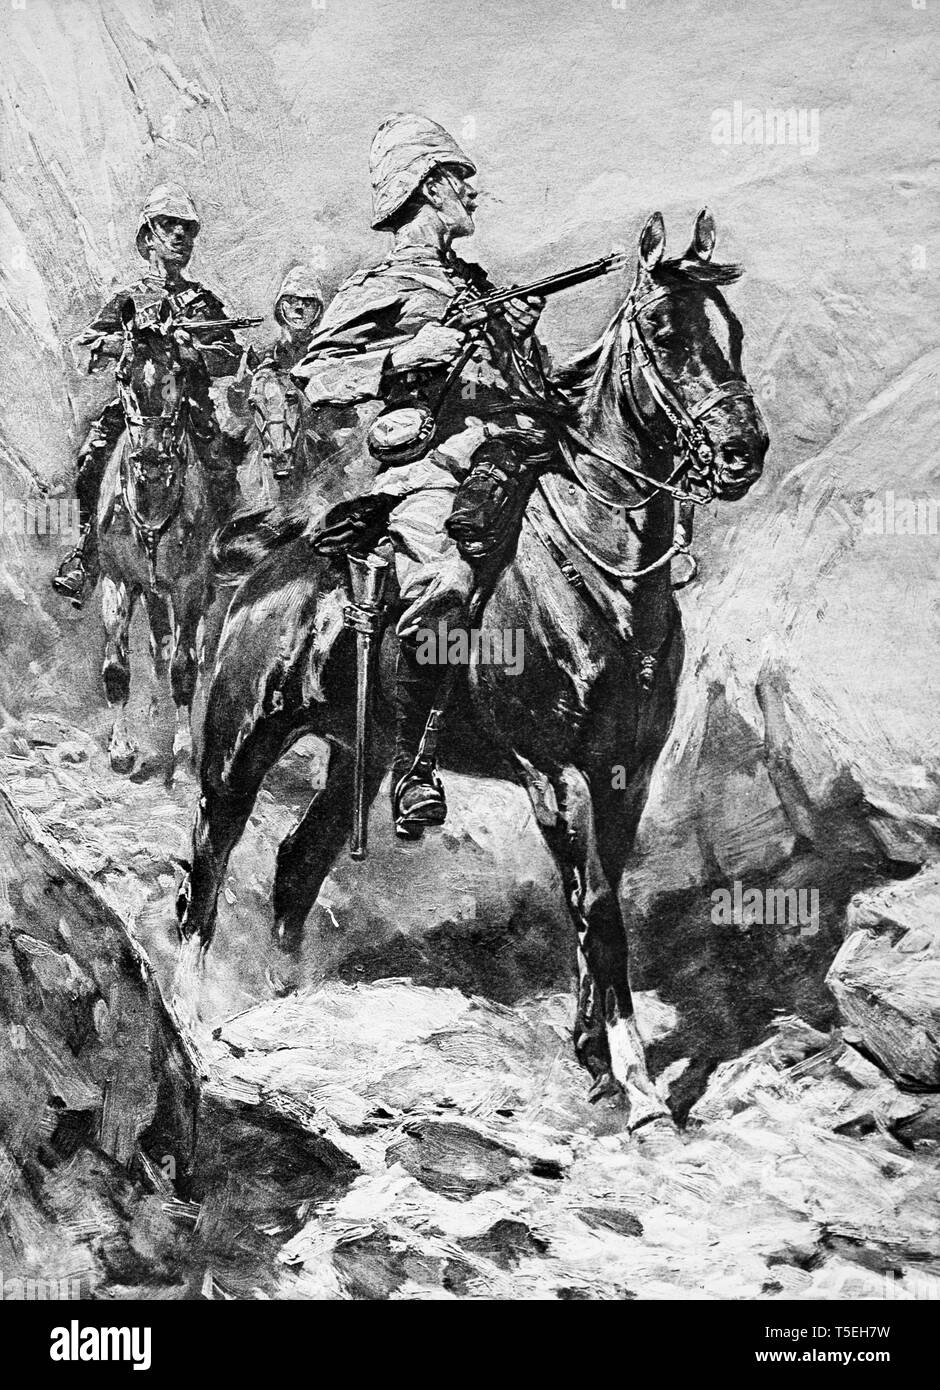 Abbildung aus der Illustrated London News in 1900, die Britische Kavallerie Soldaten während des Burenkriegs im Südlichen Afrika. Stockfoto